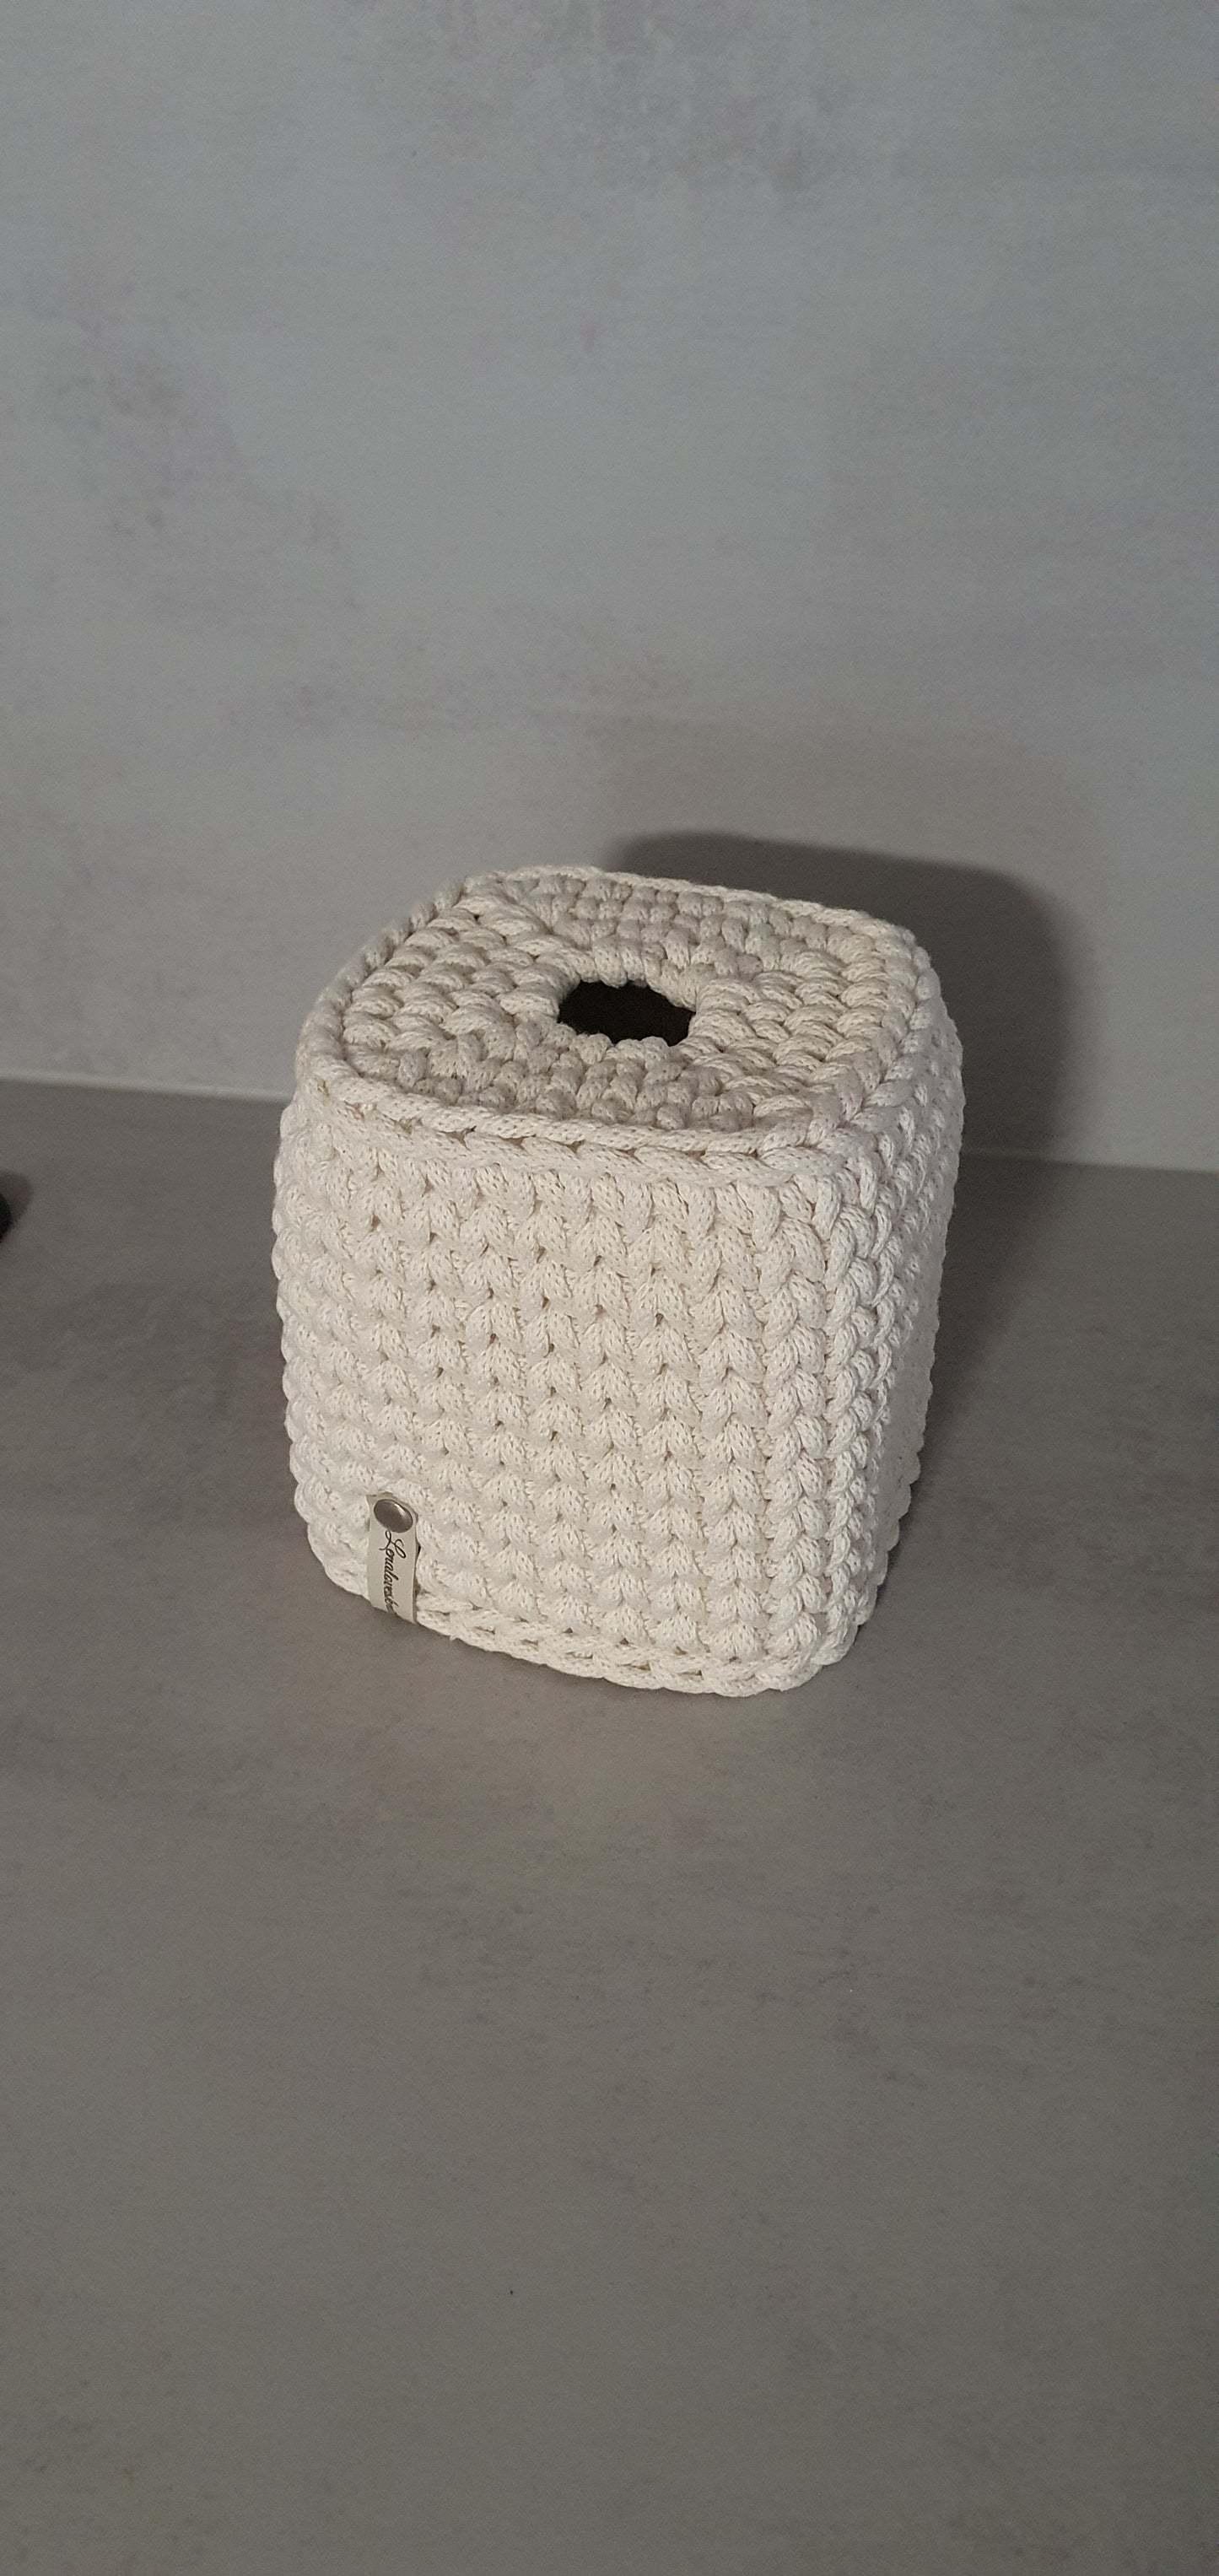 Handkerchief Box Handkerchief Box Tissuebox Tissuecover Crocheted Handkerchief Holder Crochet Basket Badut Silo